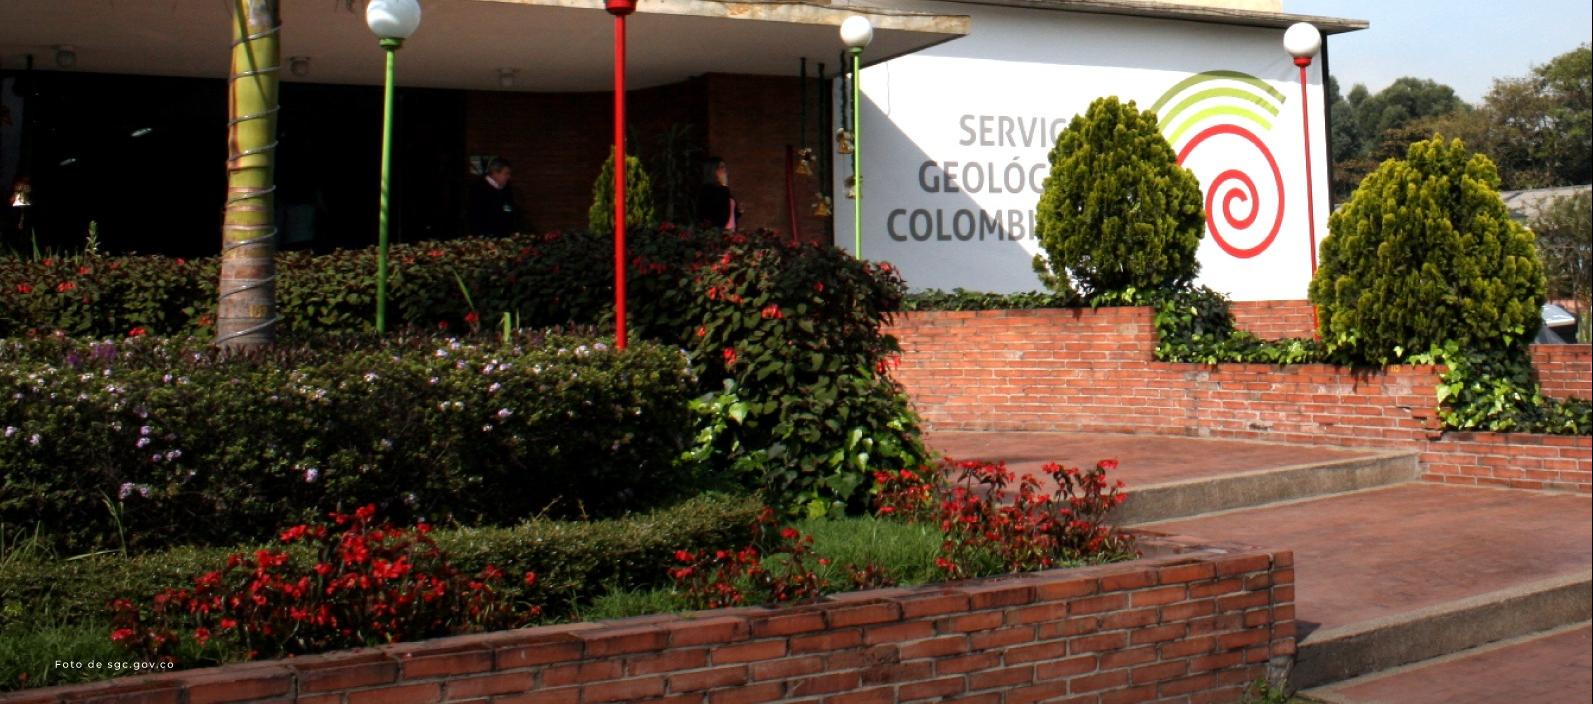 Servicio Geológico Colombiano.